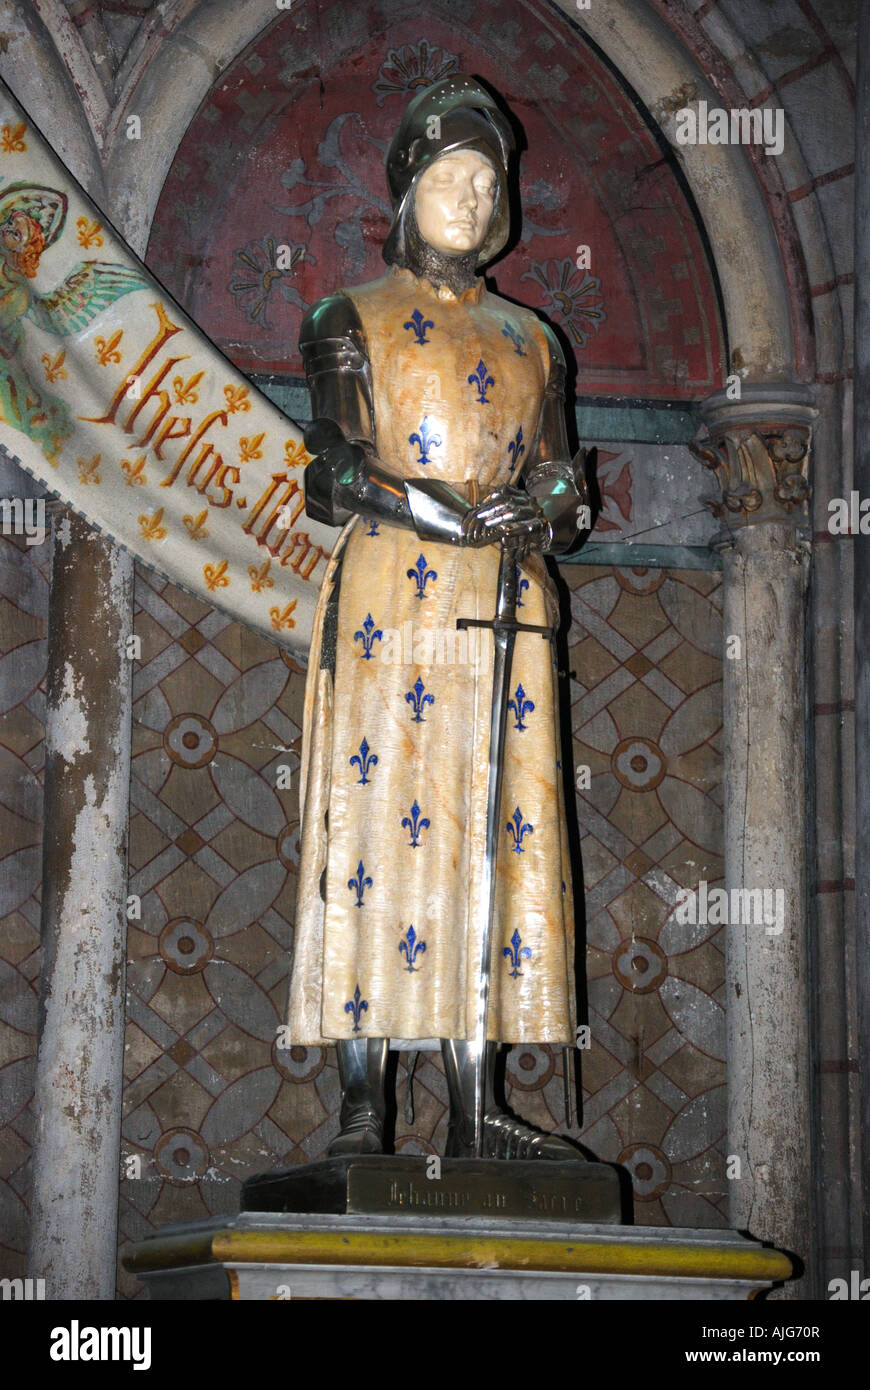 Statue de Jeanne d'Arc, Cathédrale de Reims, Reims, Marne Nef, Champagne-Ardenne, France Banque D'Images